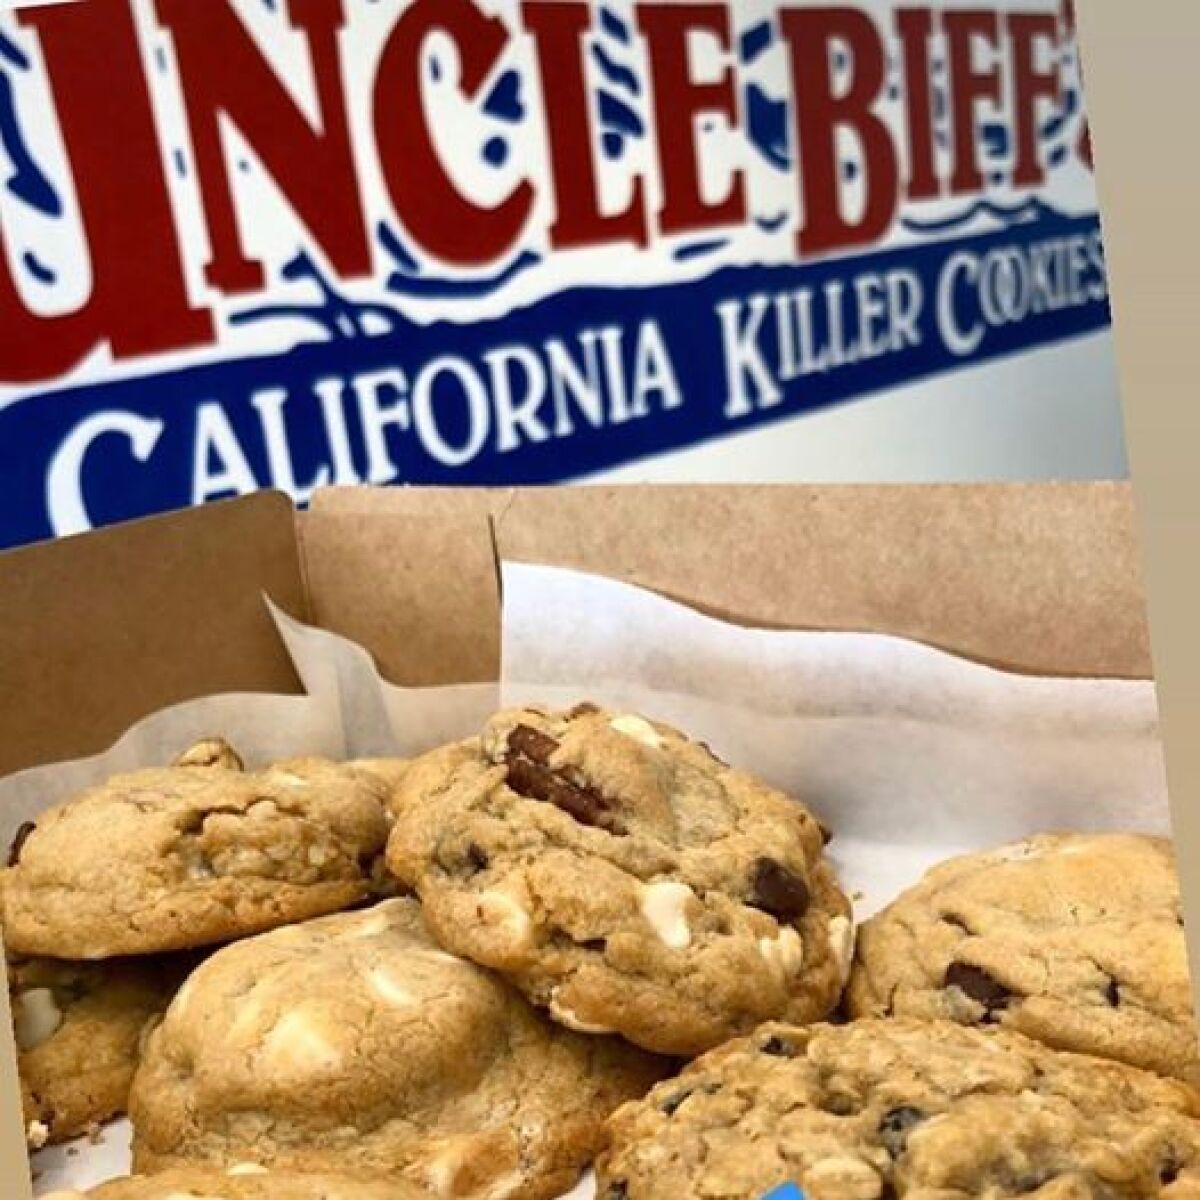 Uncle Biff's Killer Cookies is now open in Solana Beach.